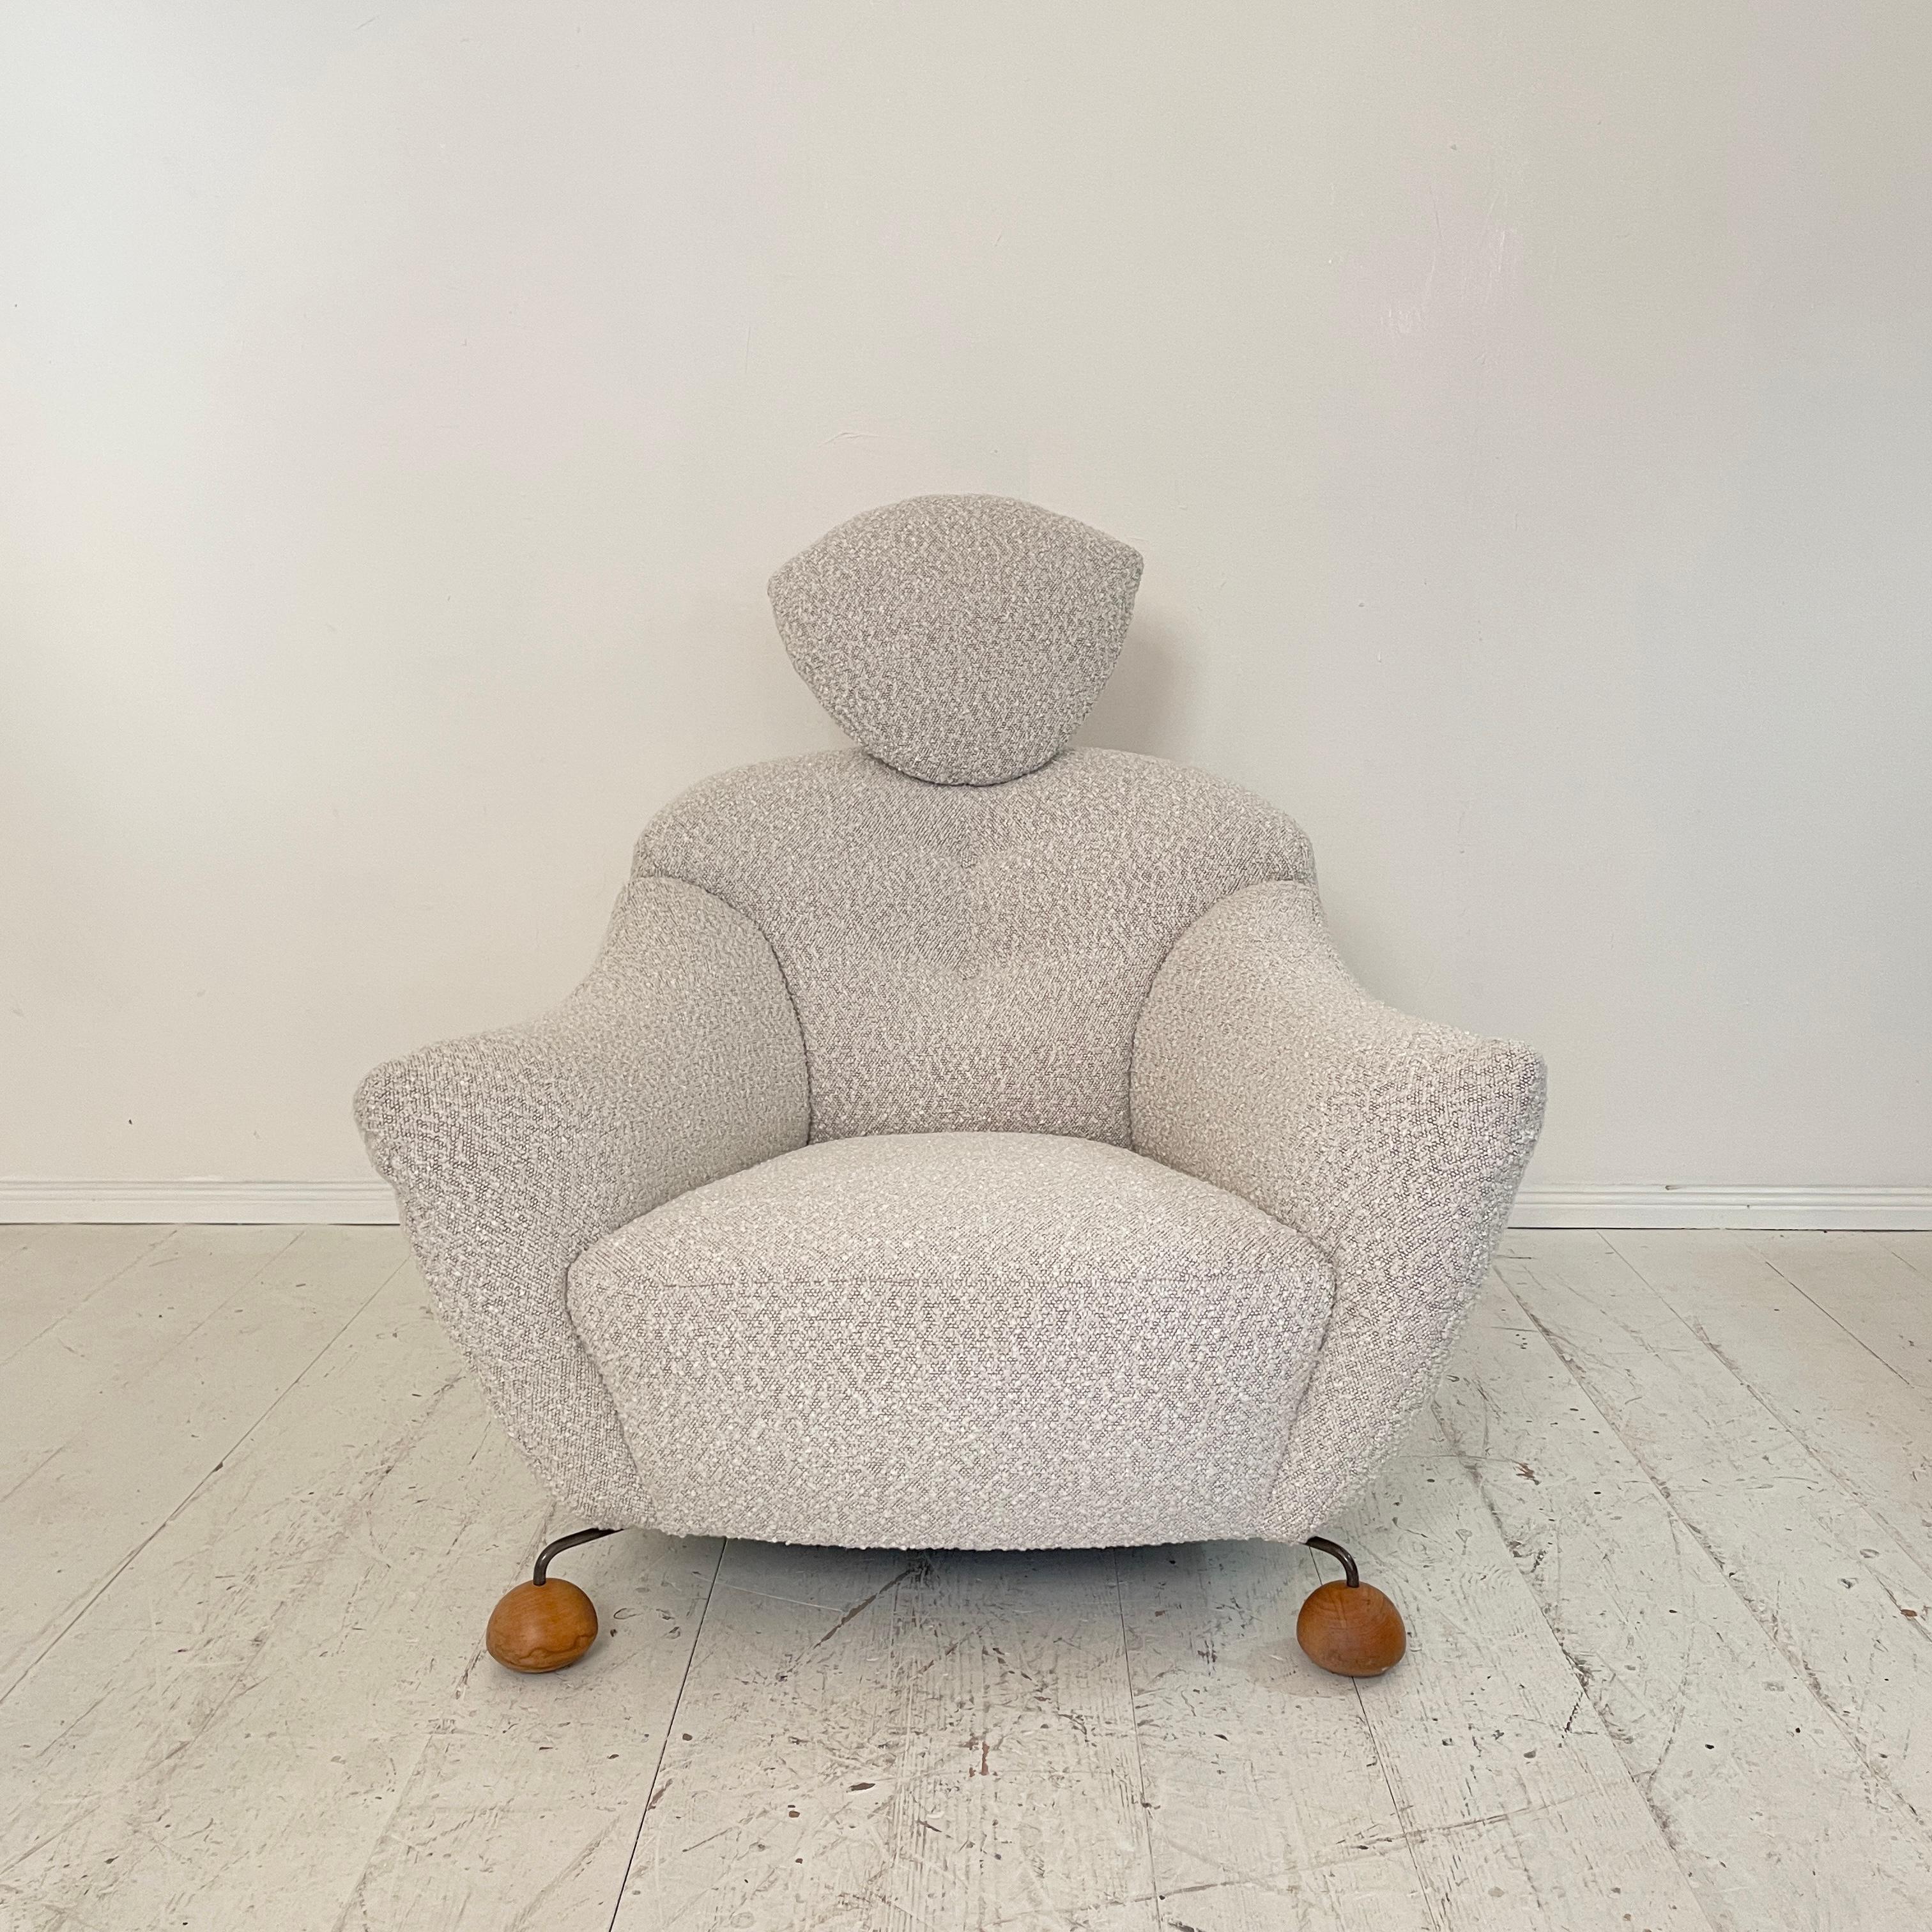 Dieser sehr bequeme Sessel wurde gerade mit weißem Boucle-Stoff neu gepolstert. 
Er wurde in den 1980er Jahren in Italien hergestellt. 
Die Form erinnert an einen sitzenden Mann. Ein großartiges Design aus dem Raum Memphis.
Ein einzigartiges Stück,